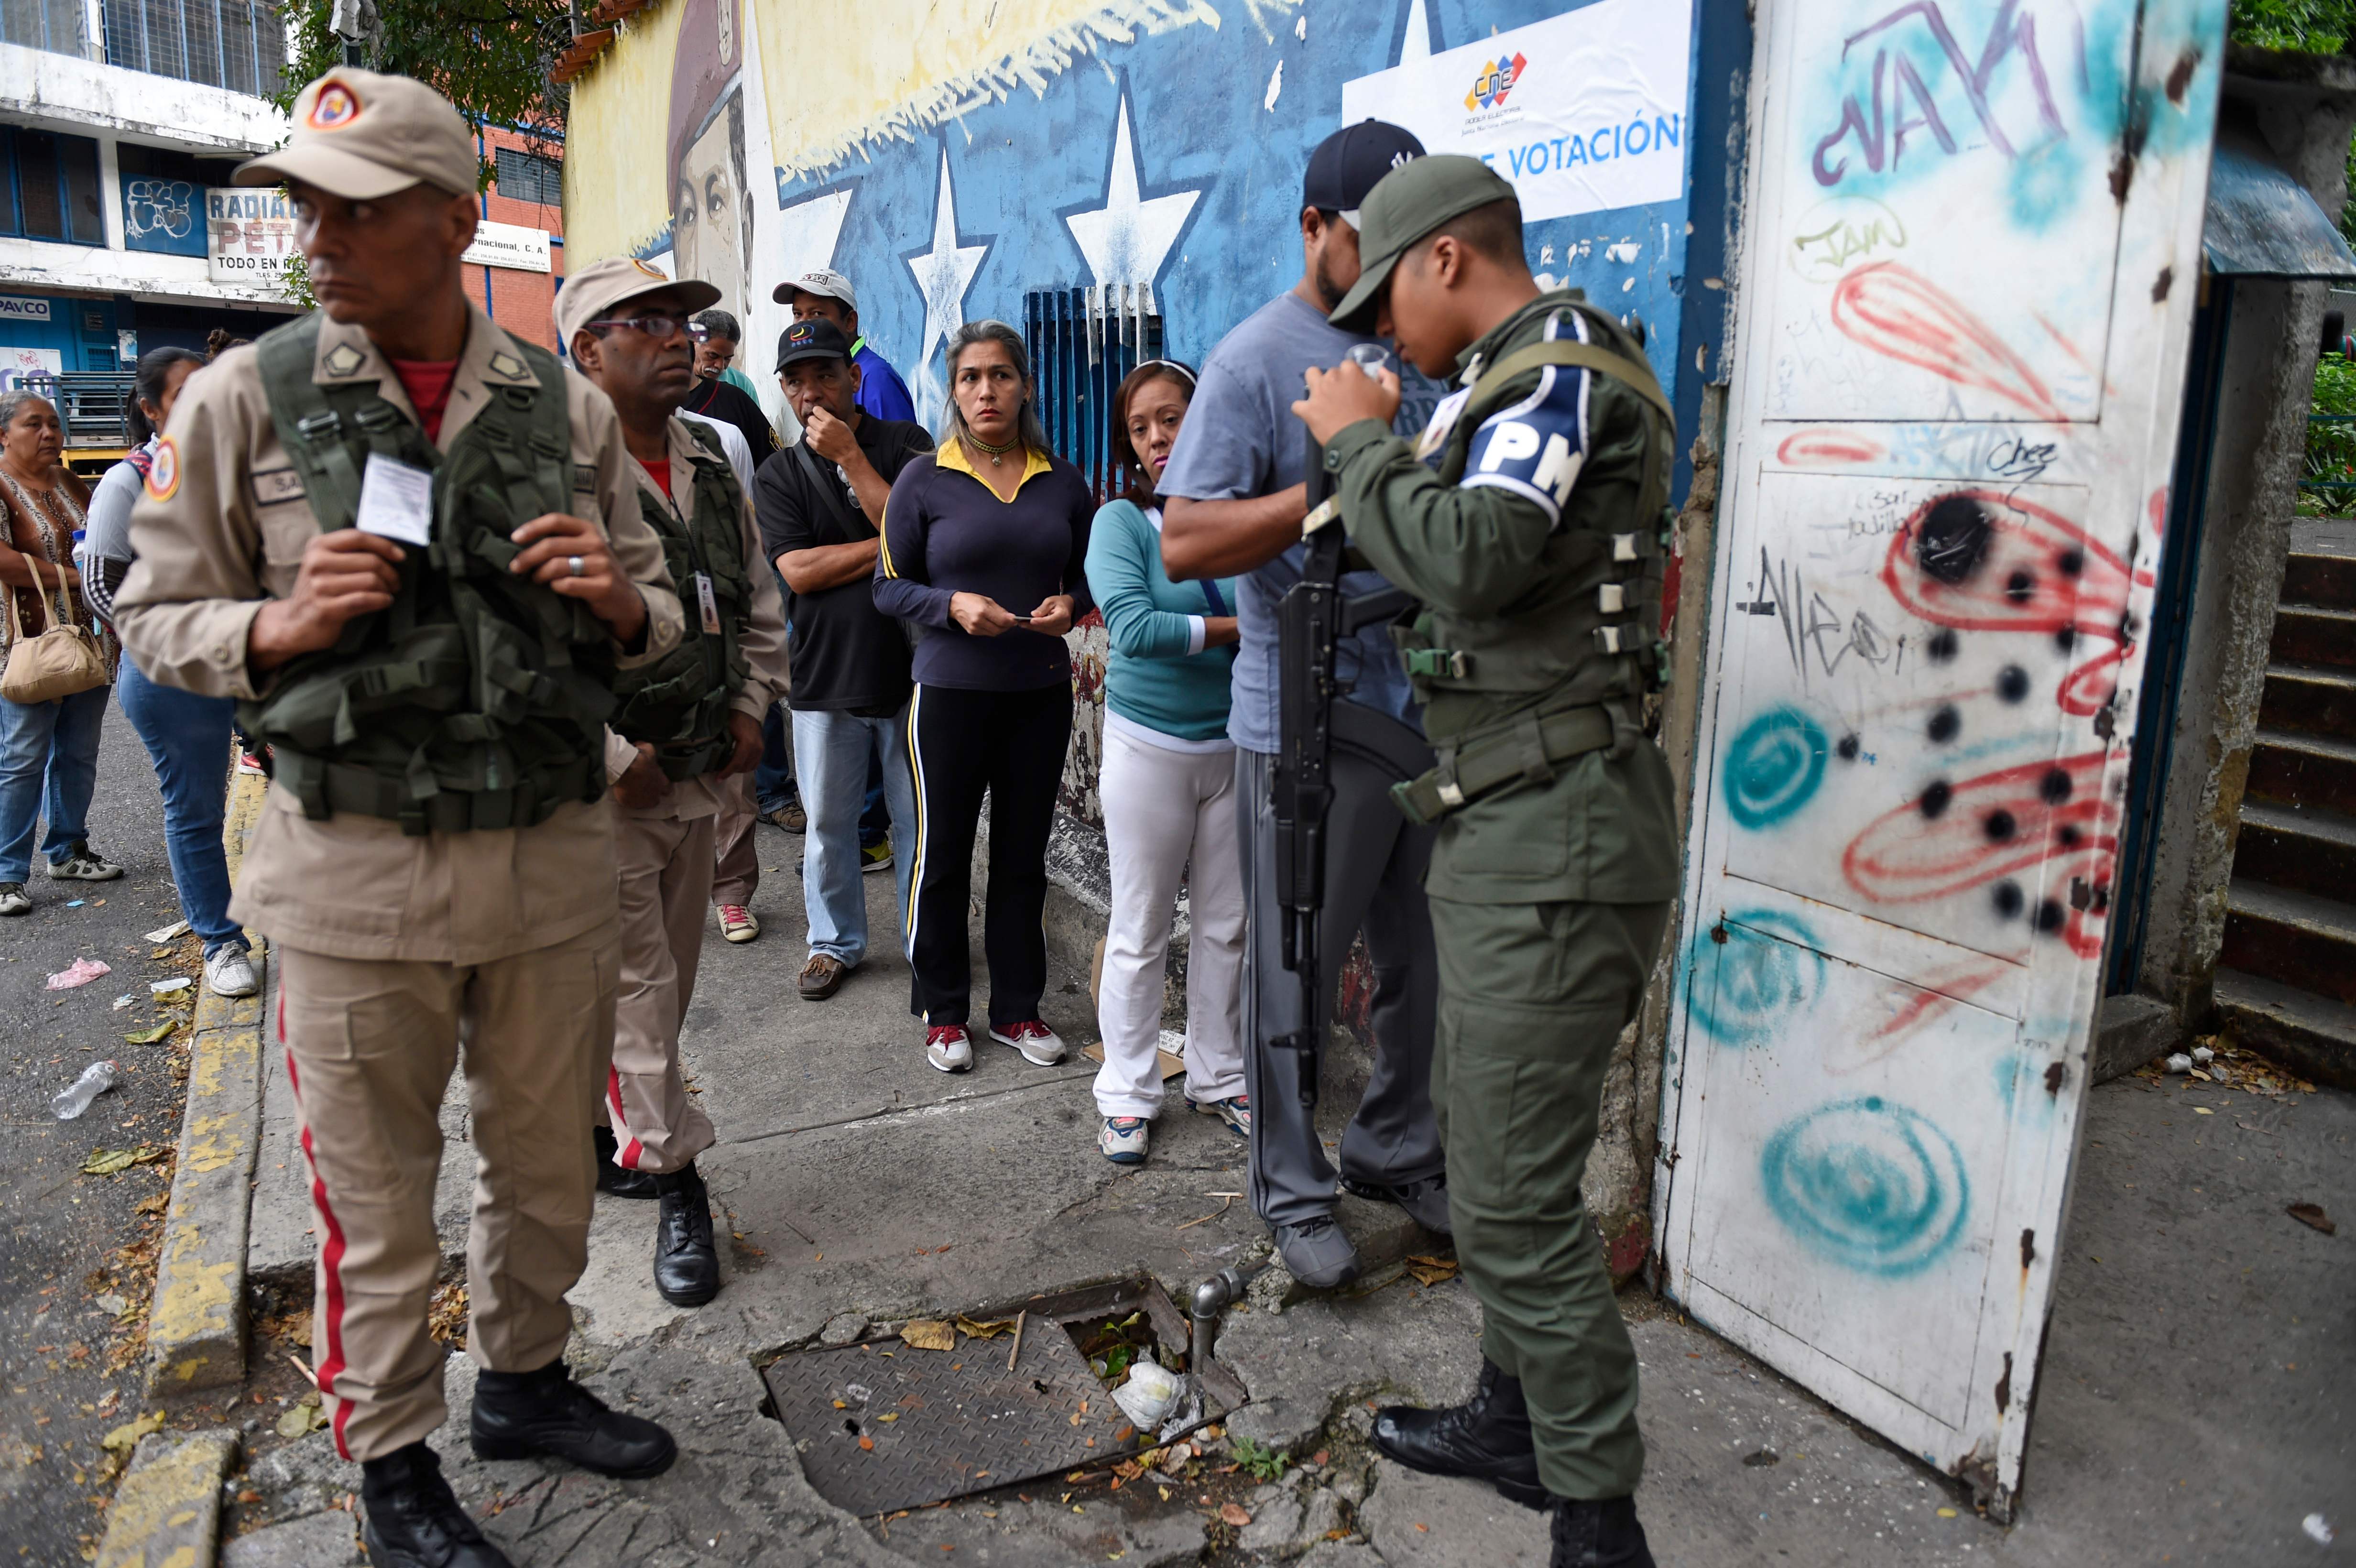 عشرات الفنزويليين فى طابور الاقتراع